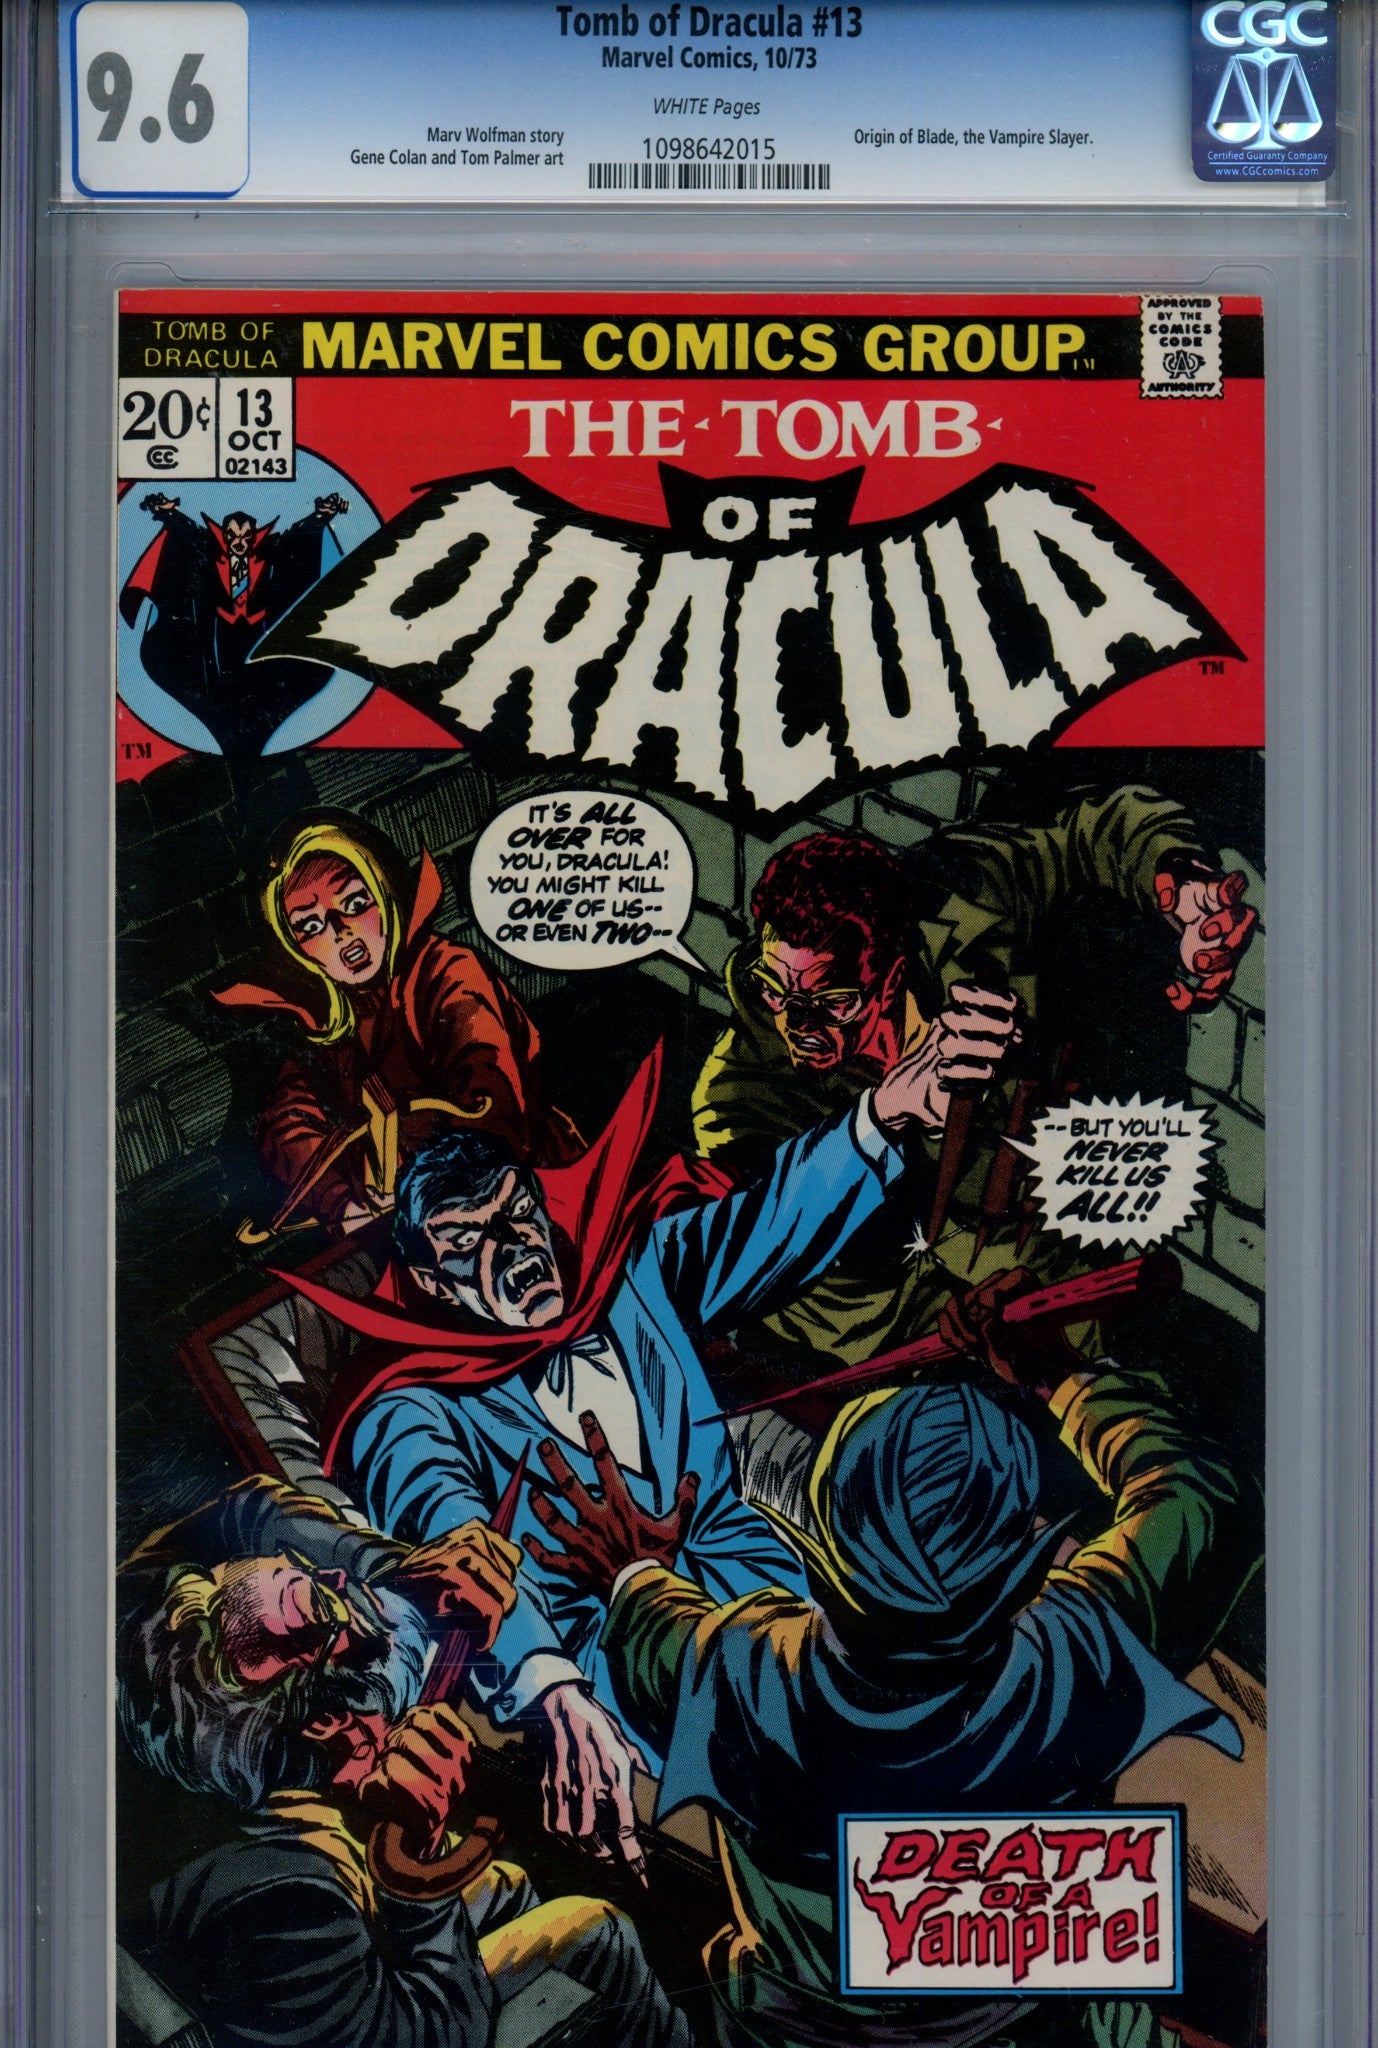 Tomb of Dracula Vol 1 13 CGC 9.6 (1973)